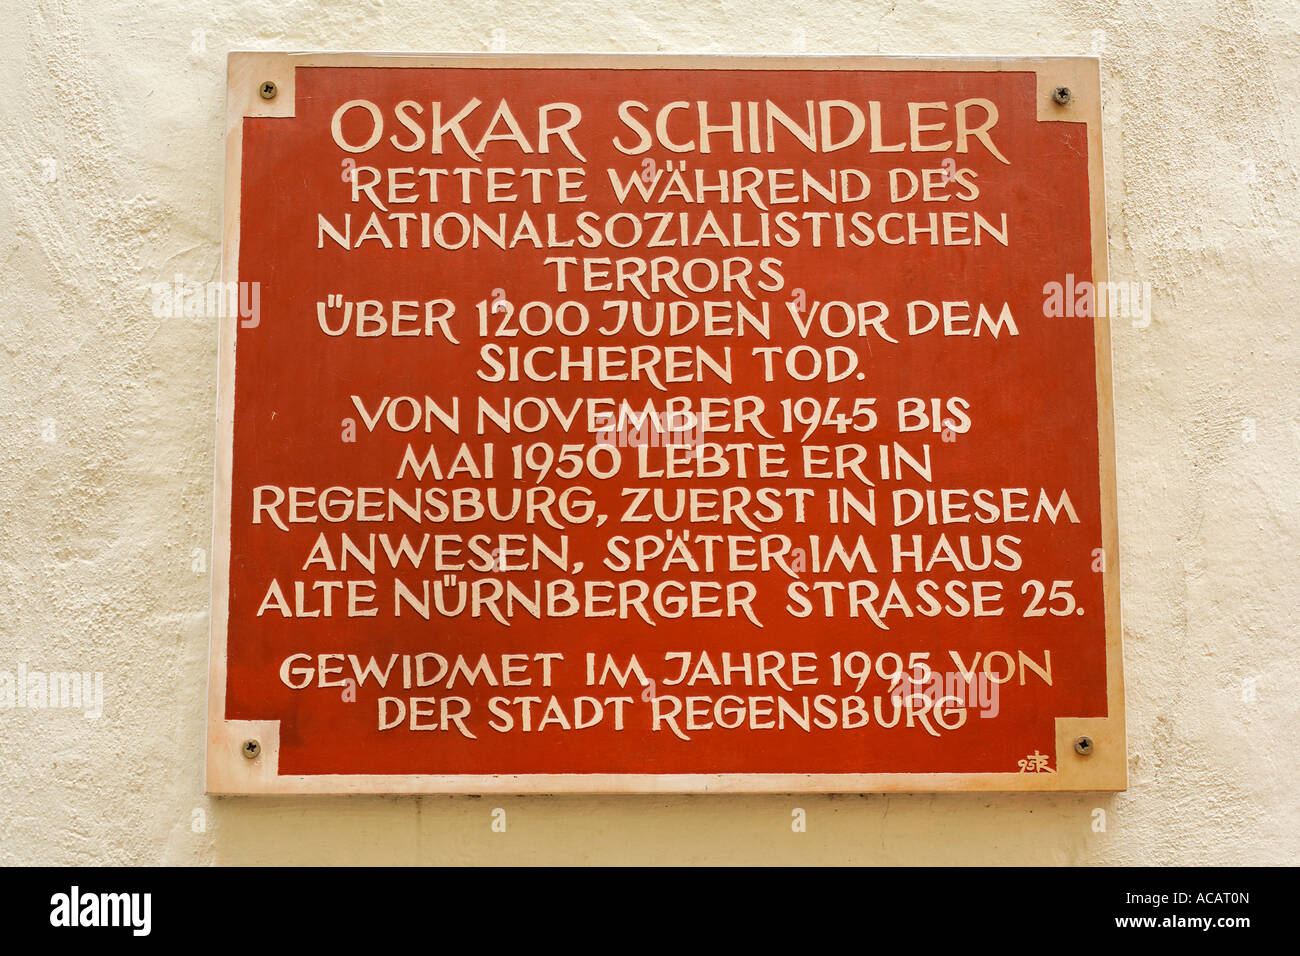 Denkmal Inschrift für Oskar Schindler am Watmarkt, Regensburg, Oberpfalz, Bayern, Deutschland Stockfoto